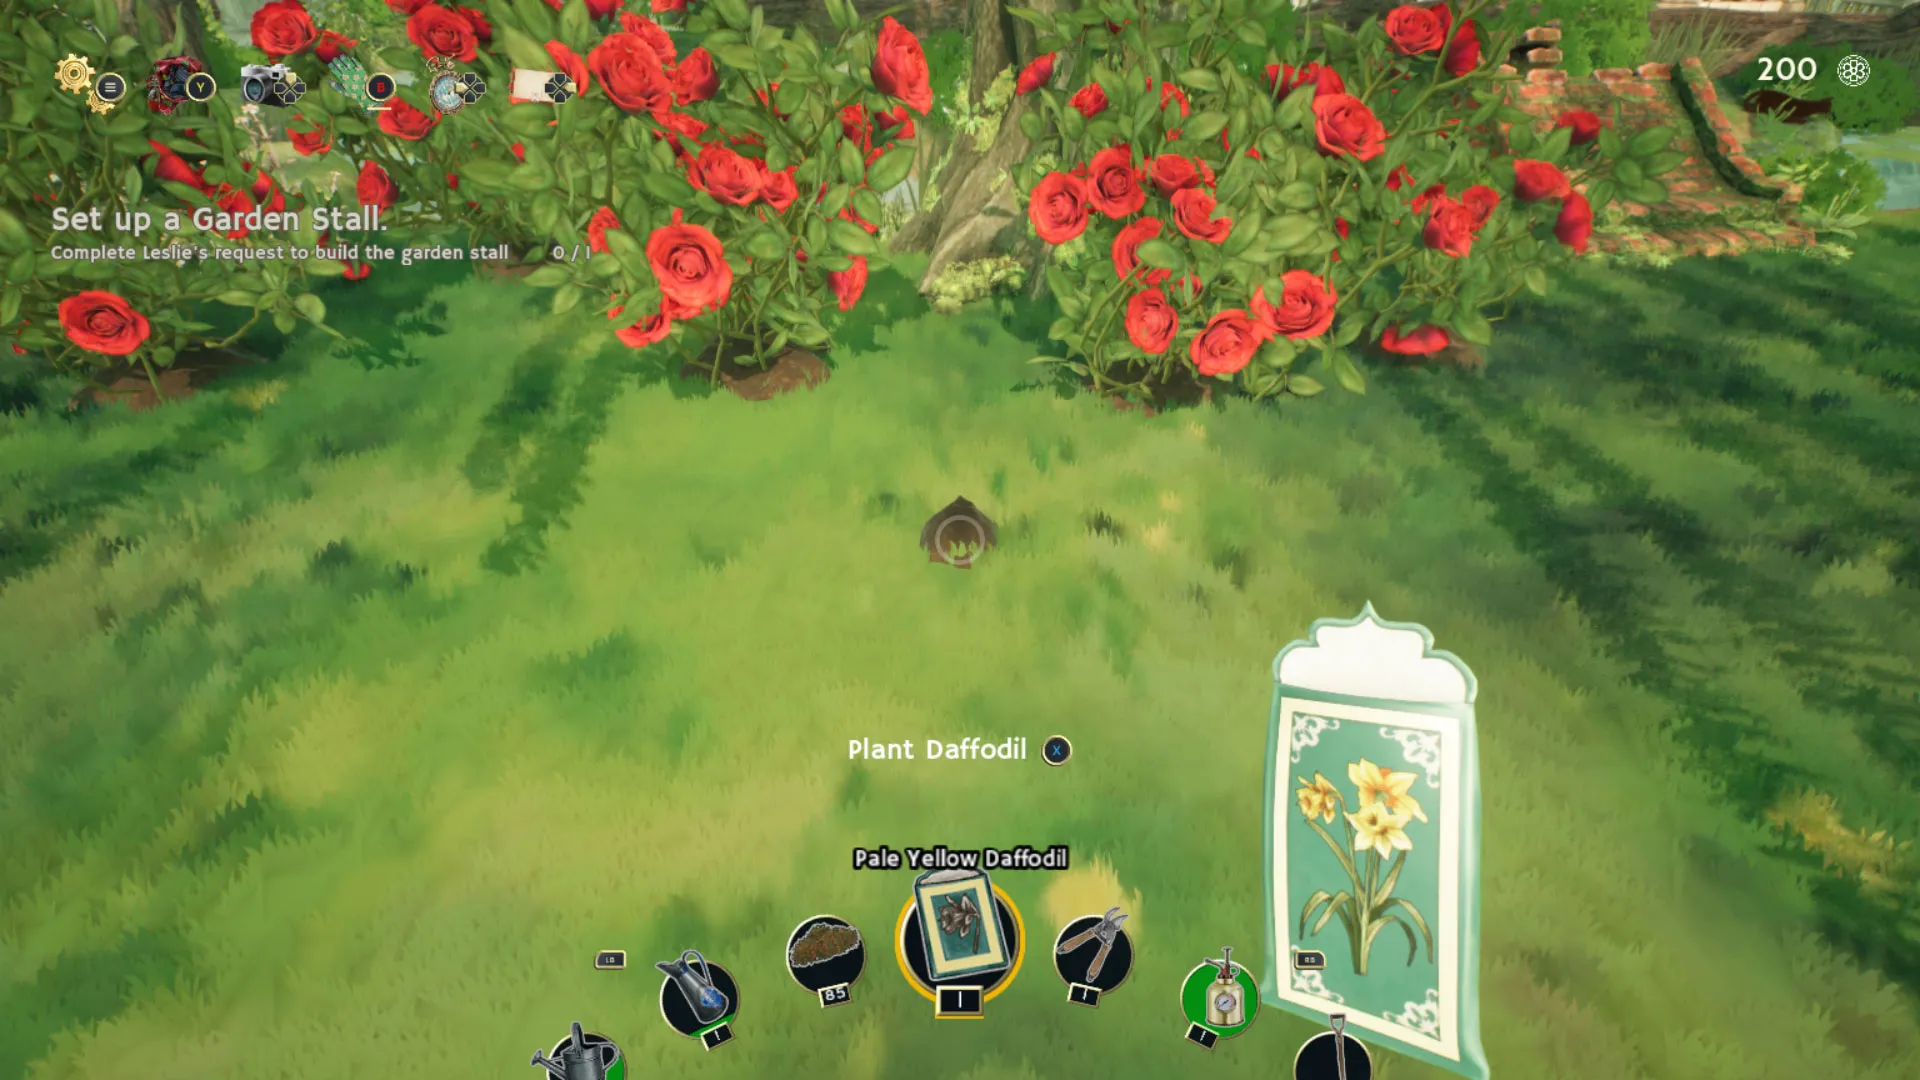 Момент перед посадкой нарцисса рядом с кустами роз в Садовой жизни: Уютный симулятор.